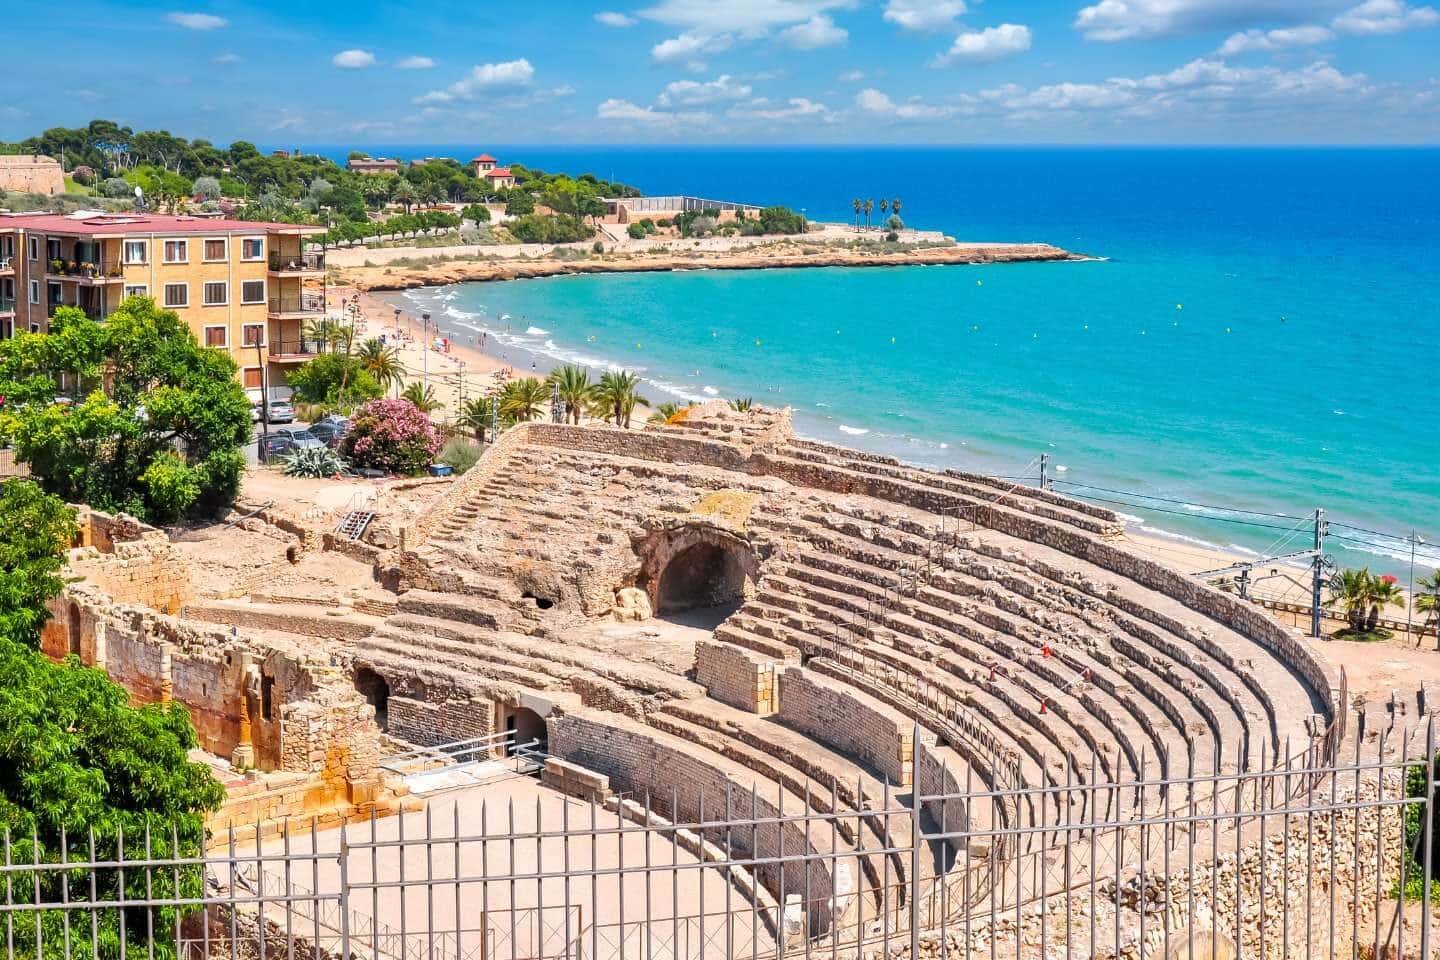 Tarragona Roman Amphitheater in Spain